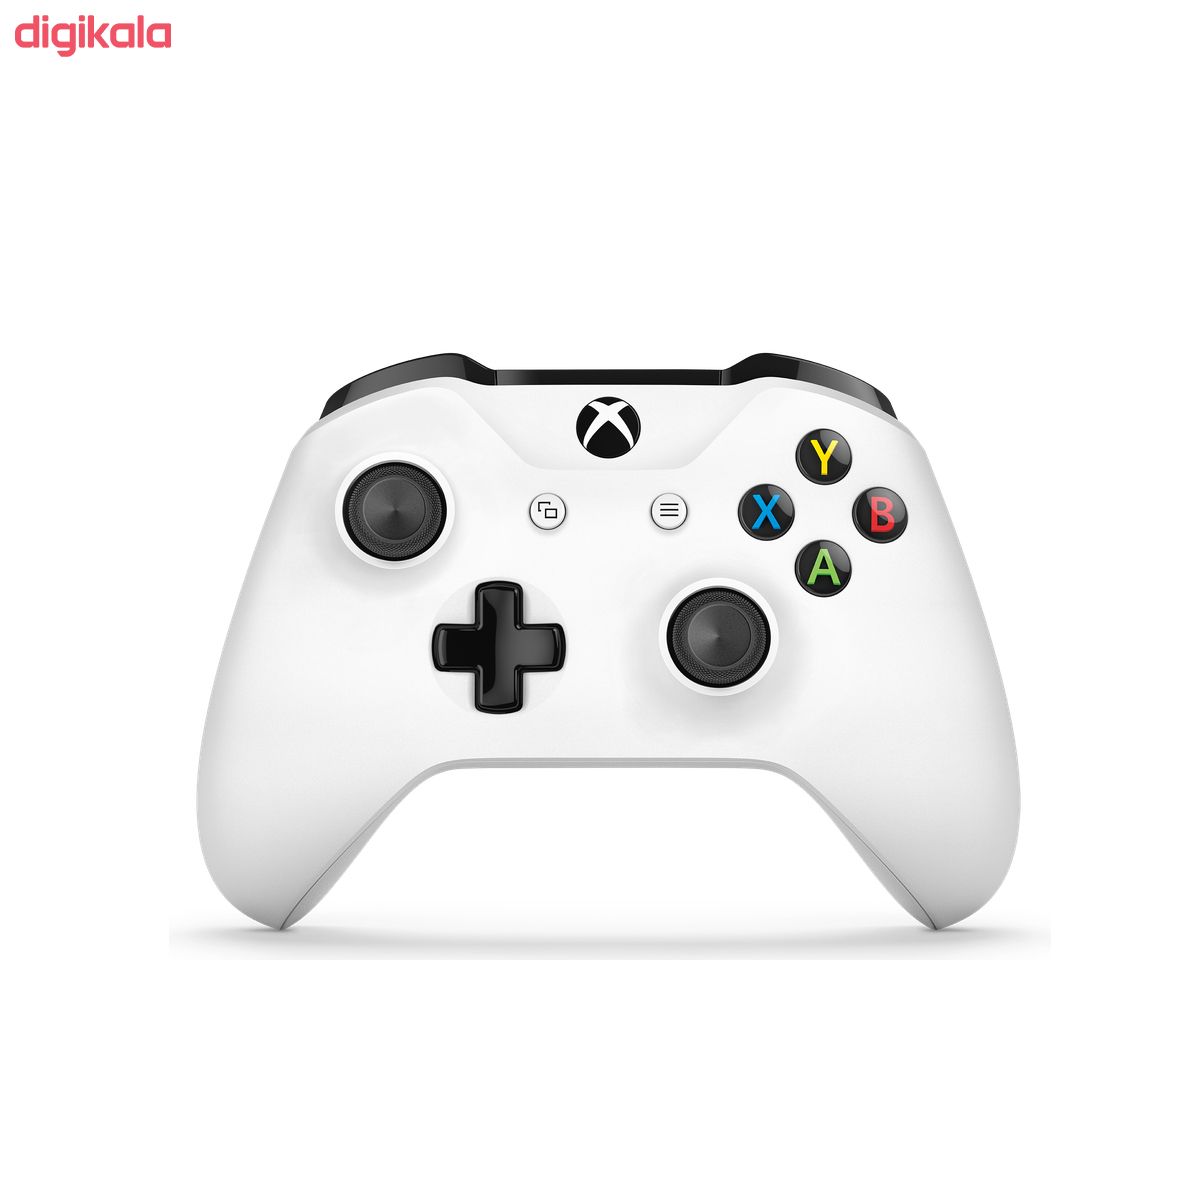  مجموعه کنسول بازی مایکروسافت مدل Xbox One S All Digital ظرفیت 1 ترابایت به همراه ۲۰ عدد بازی